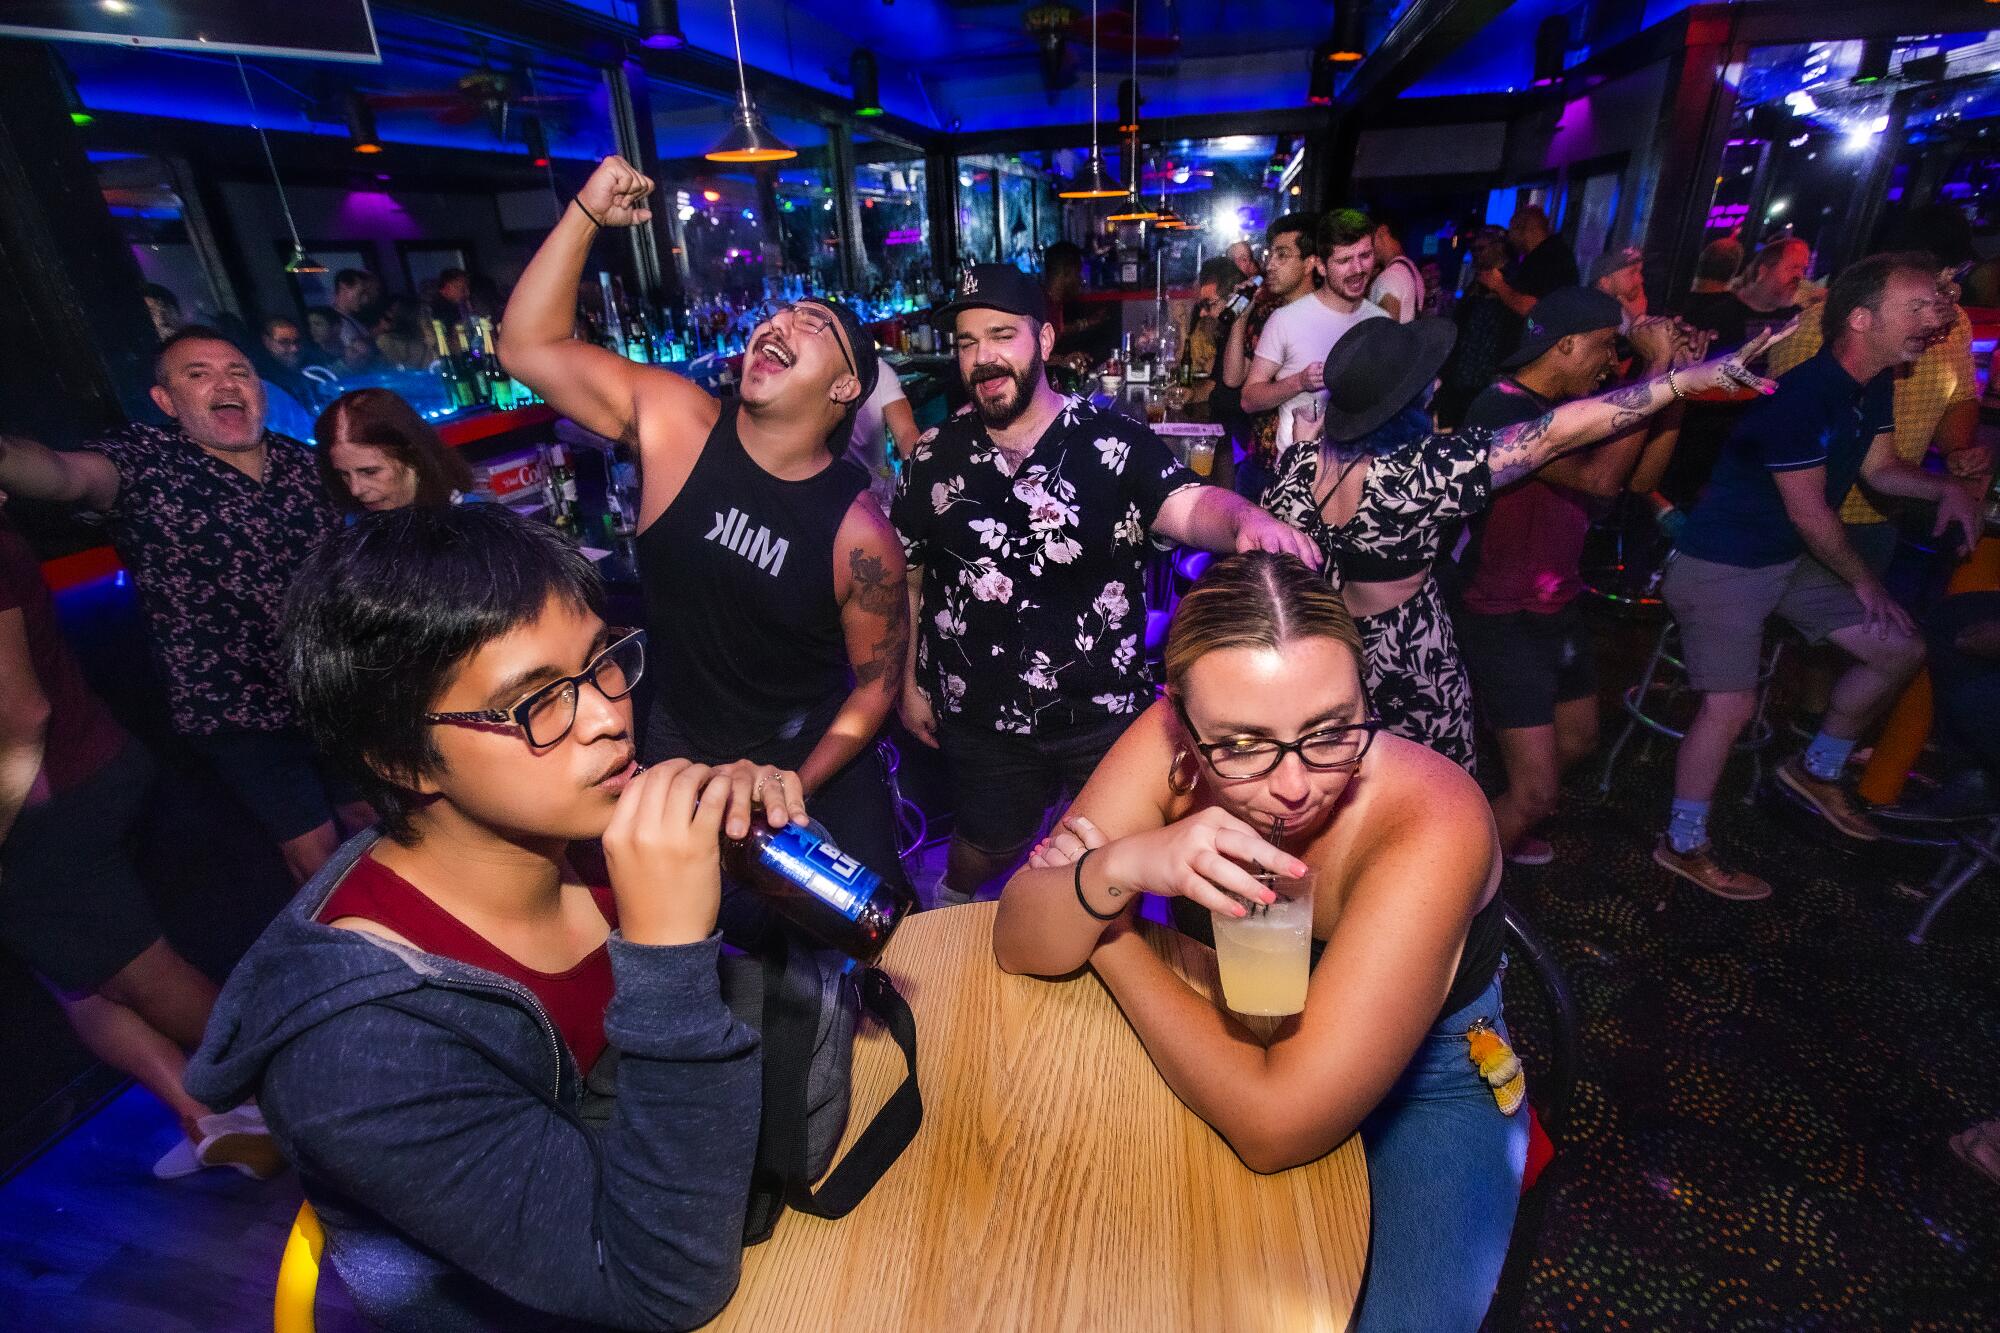 Pasadena gay bar reopens with drag, karaoke after COVID woes - Los